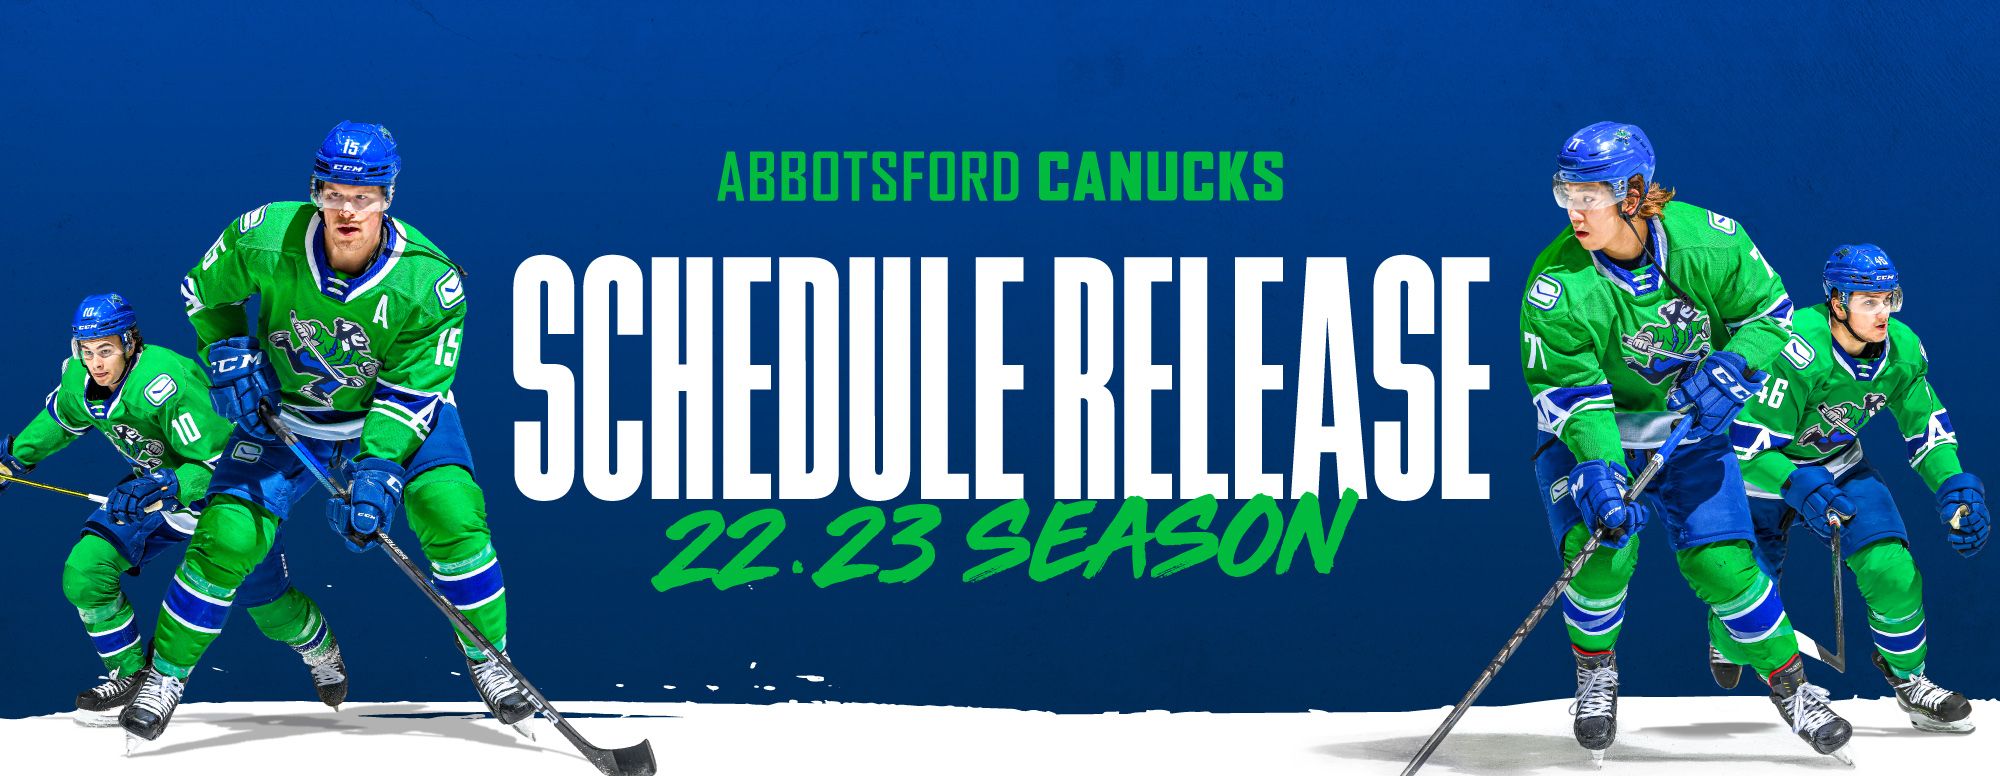 Canucks Schedule 2022/23 : r/canucks